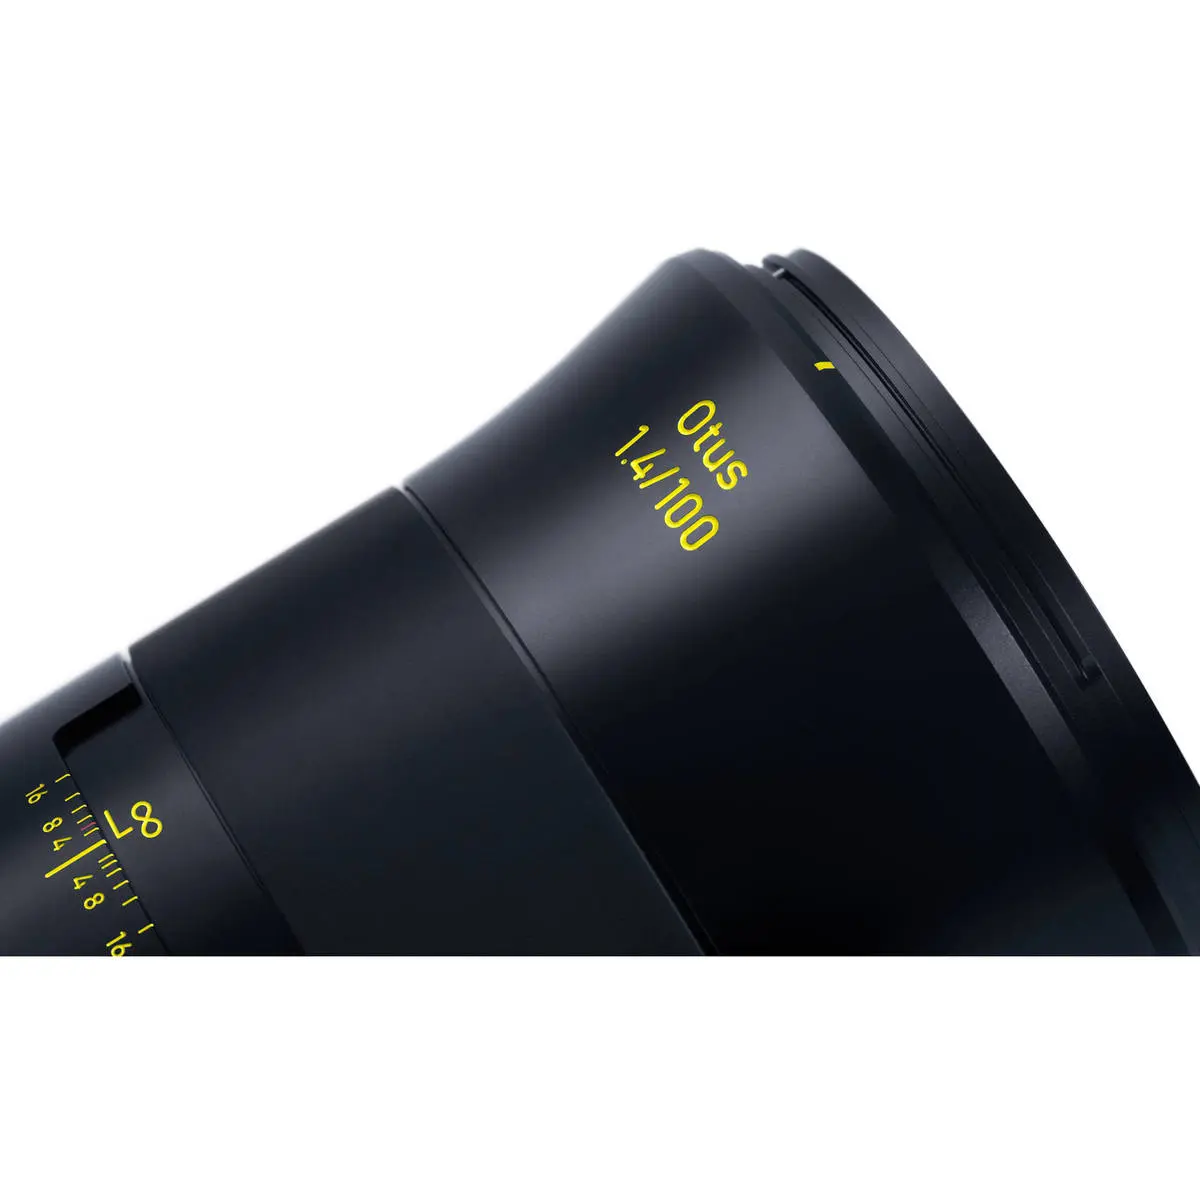 8. Carl Zeiss Otus 1.4/100 ZE (Canon) Lens